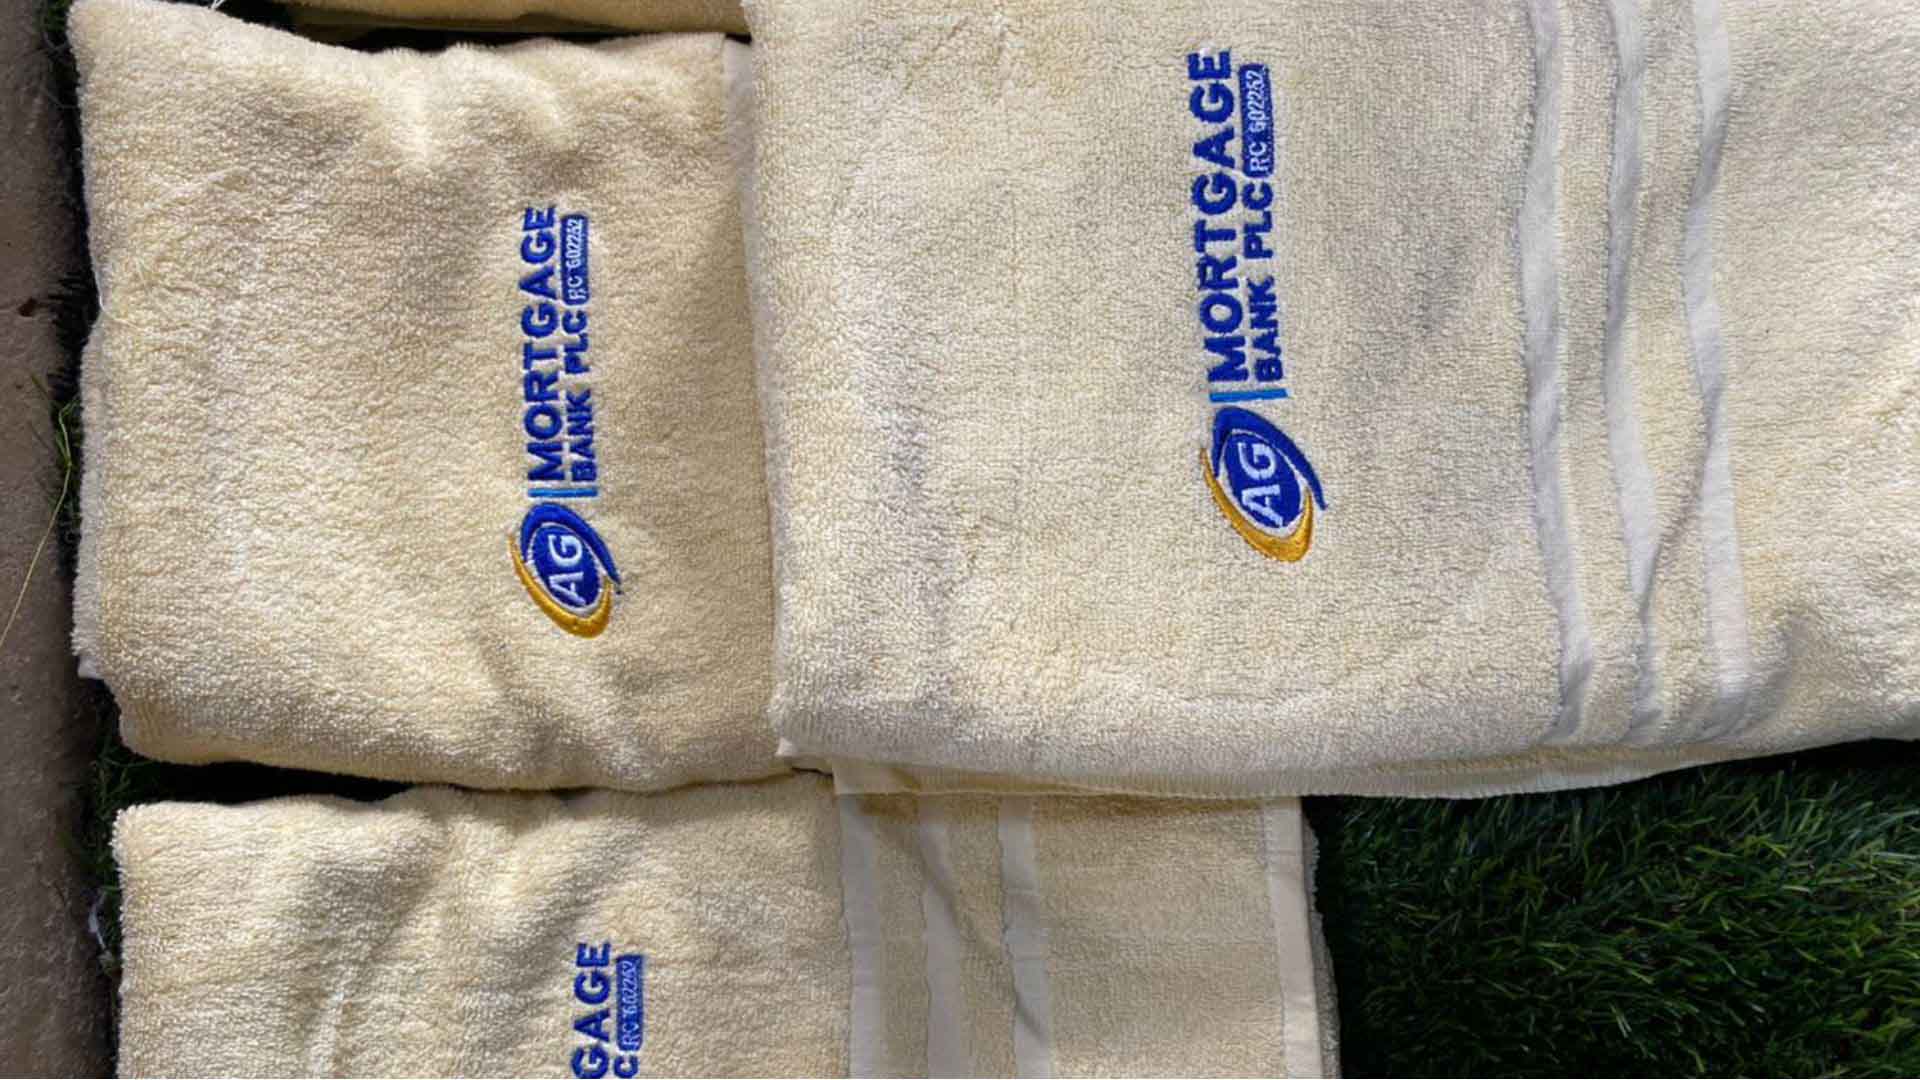 Monogram Towel Design and Print in Lagos Nigeria